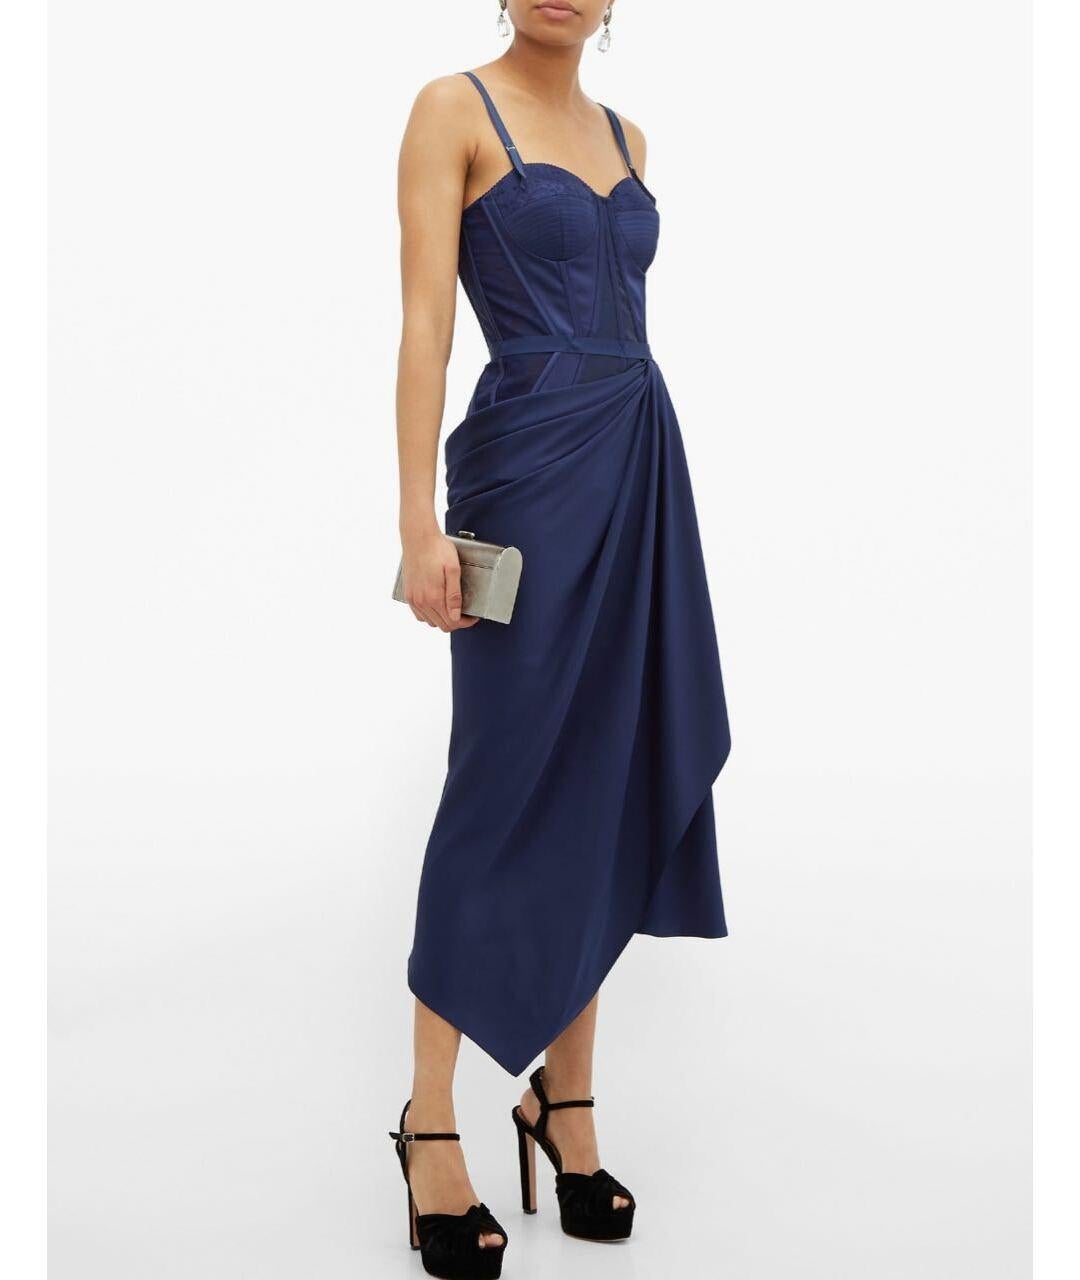 navy blue corset dress